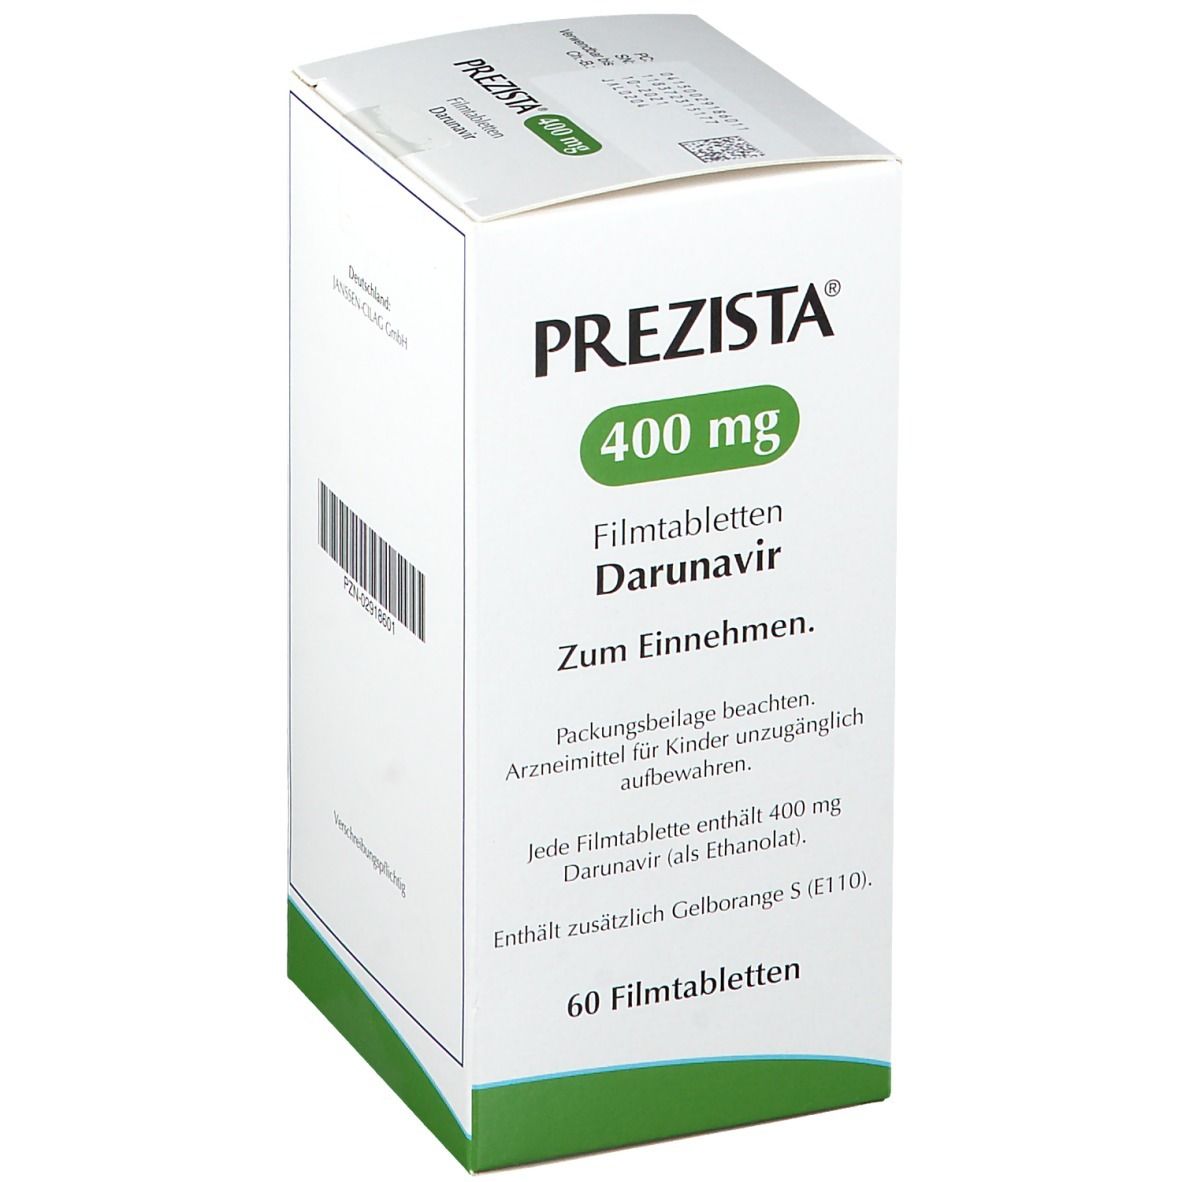 PREZISTA® 400 mg